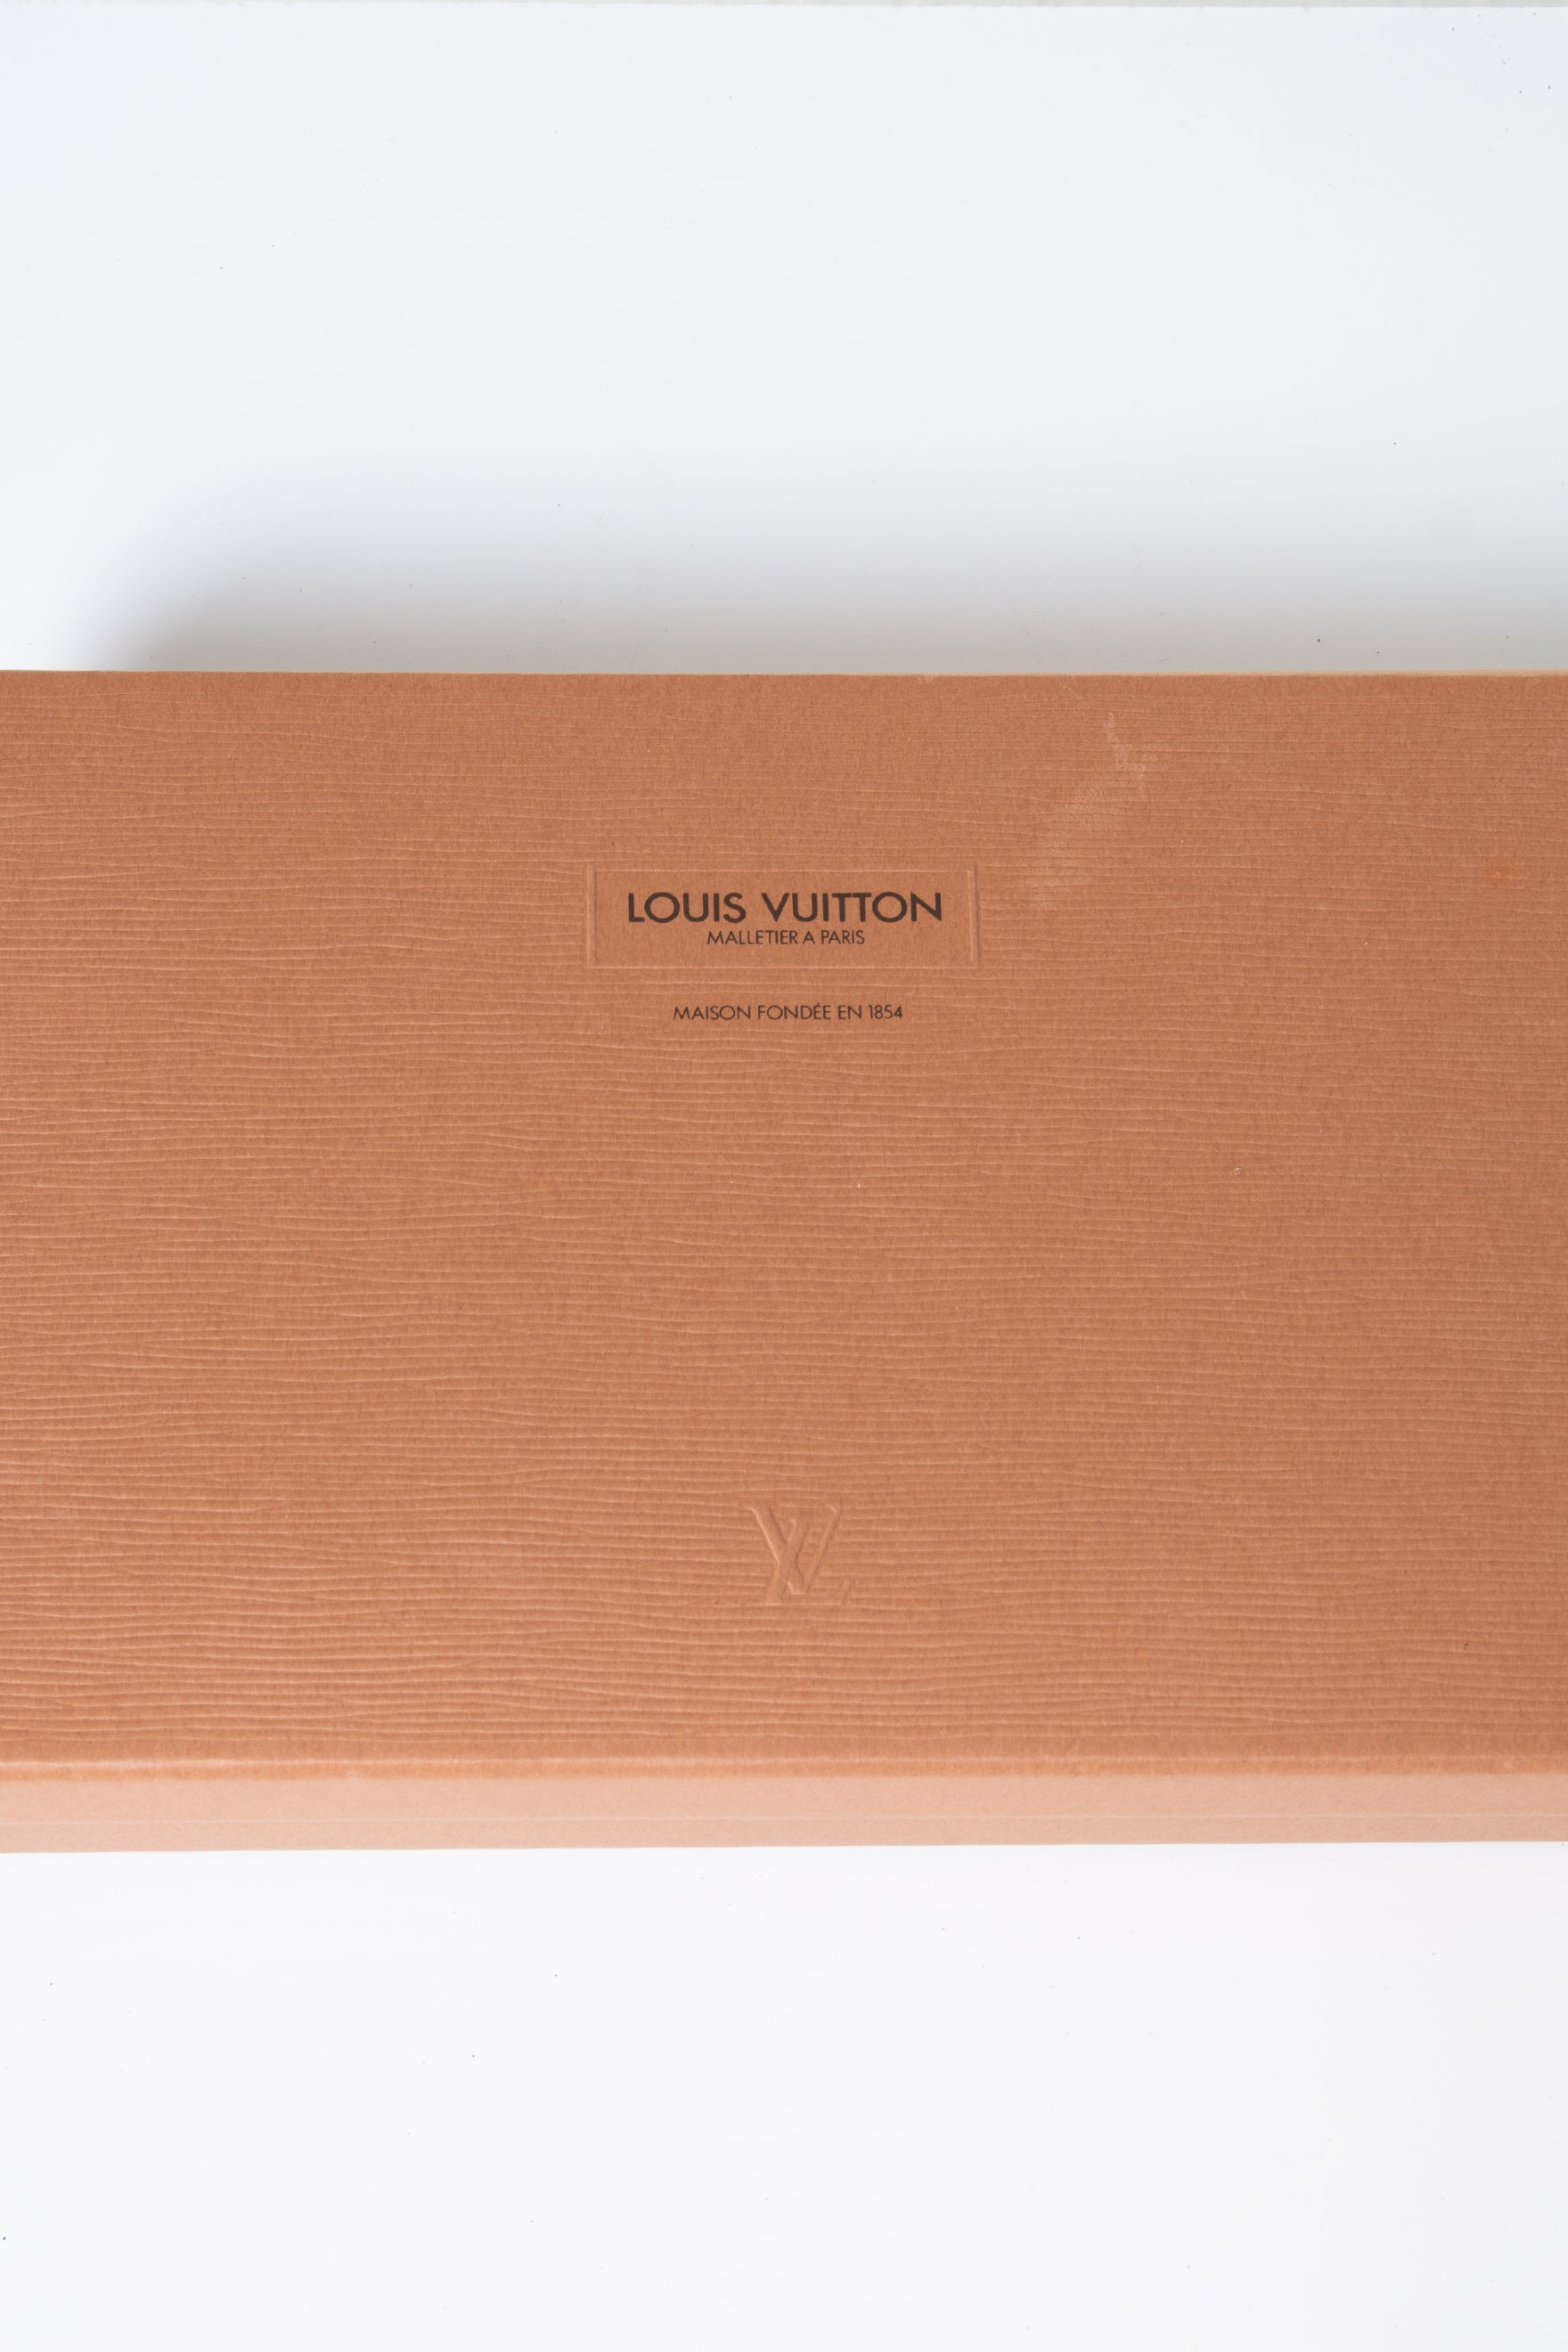 LOUIS VUITTON Malletier A Paris Maison Fondee en 1854 Wallet - BOX